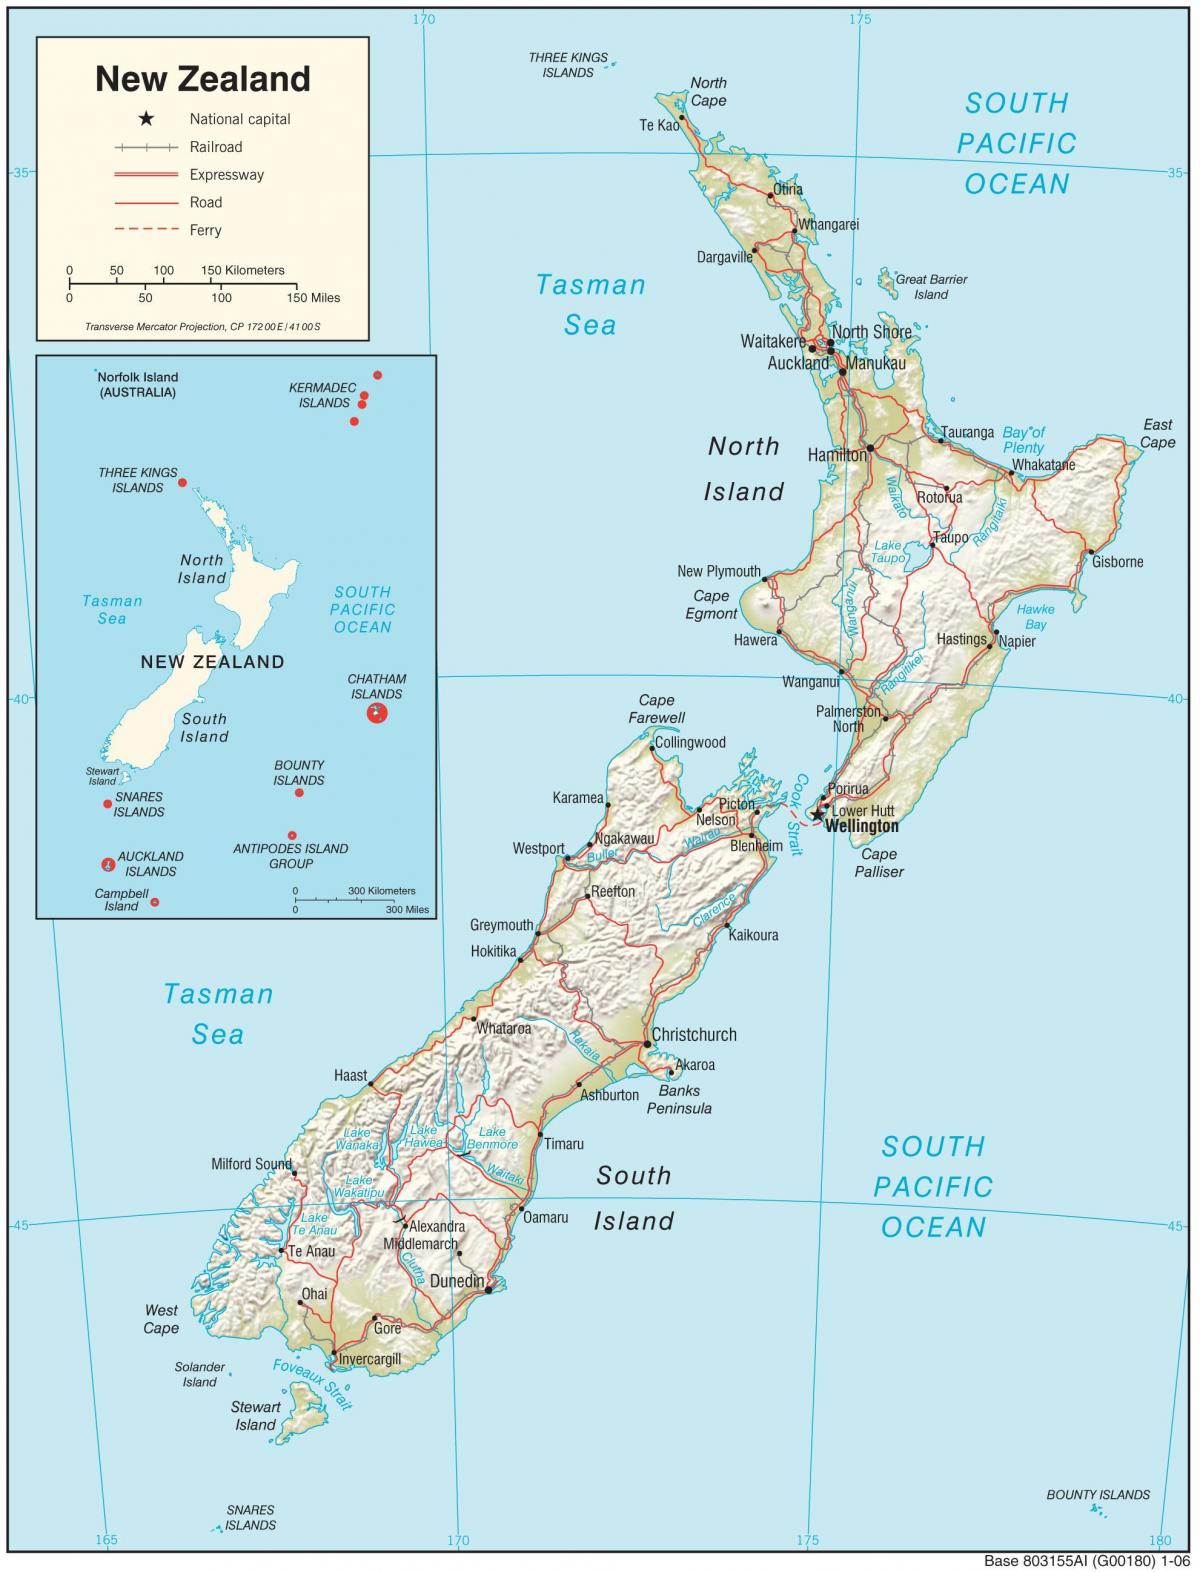 új-zéland térkép hd